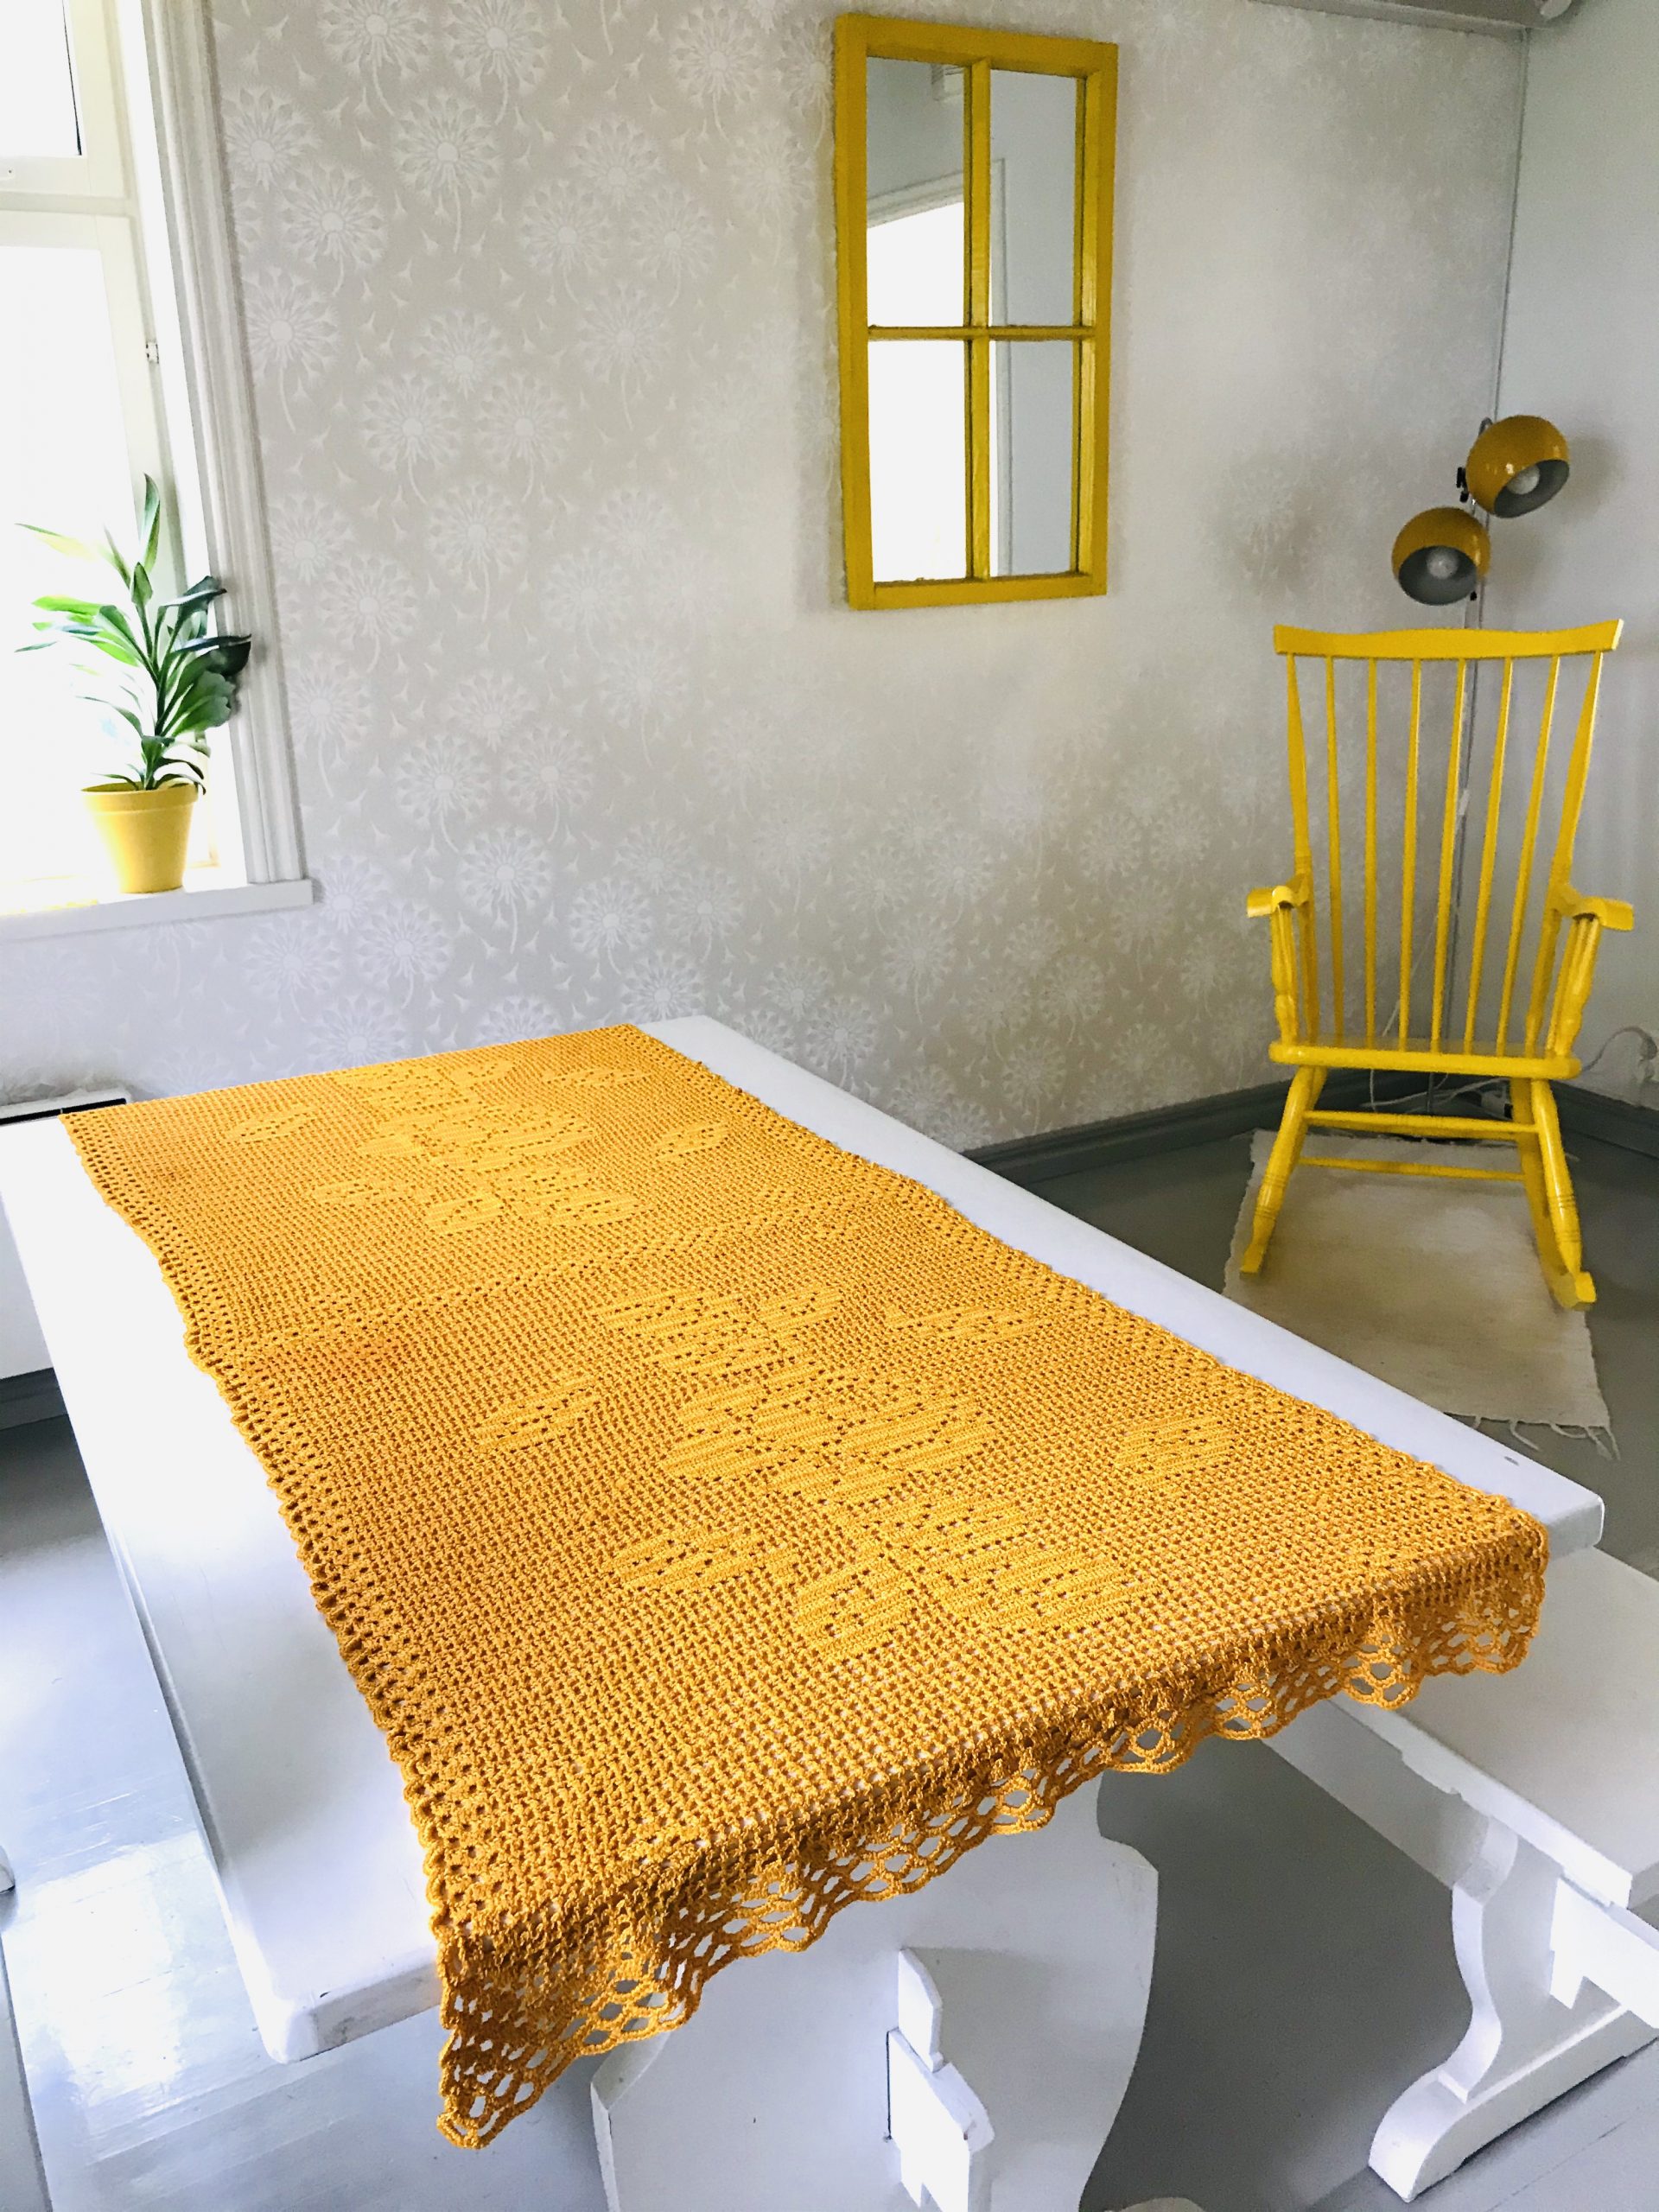 Elluyellow keltainen kirppislöytö vanha pöytäliina